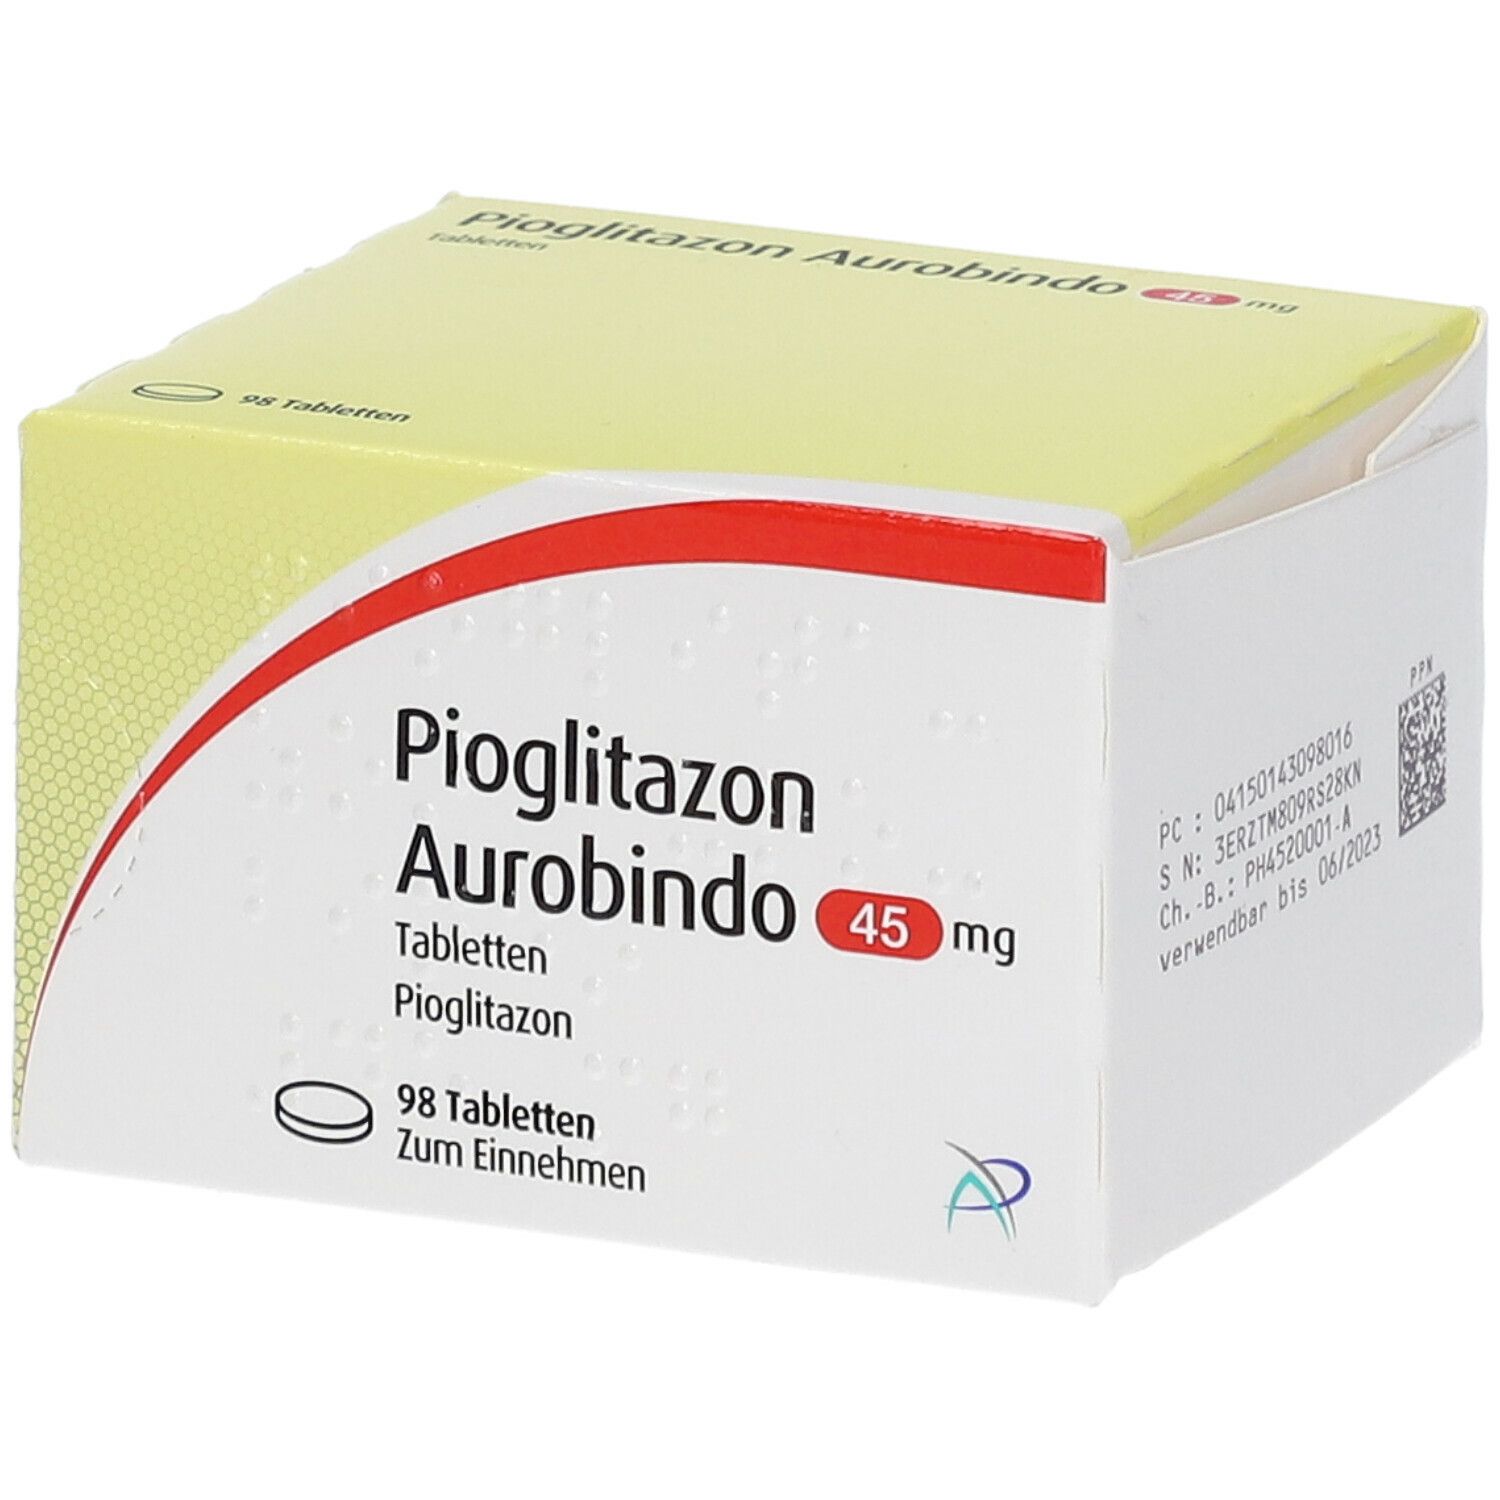 Pioglitazon Aurobindo 45 mg